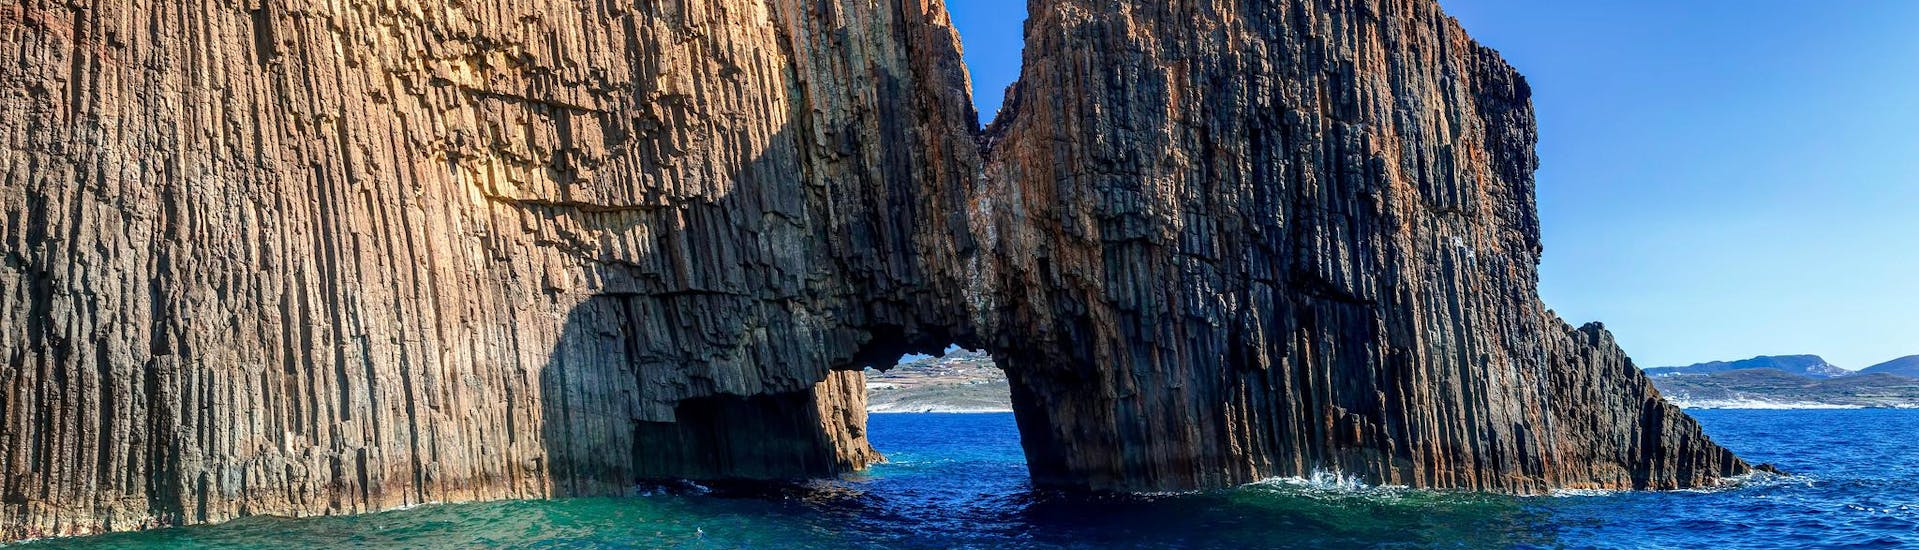 Increíbles islotes volcánicos rocosos de Glaronissia con un hermoso arco, que puede ver con un paseo en barco en la isla de Milos.